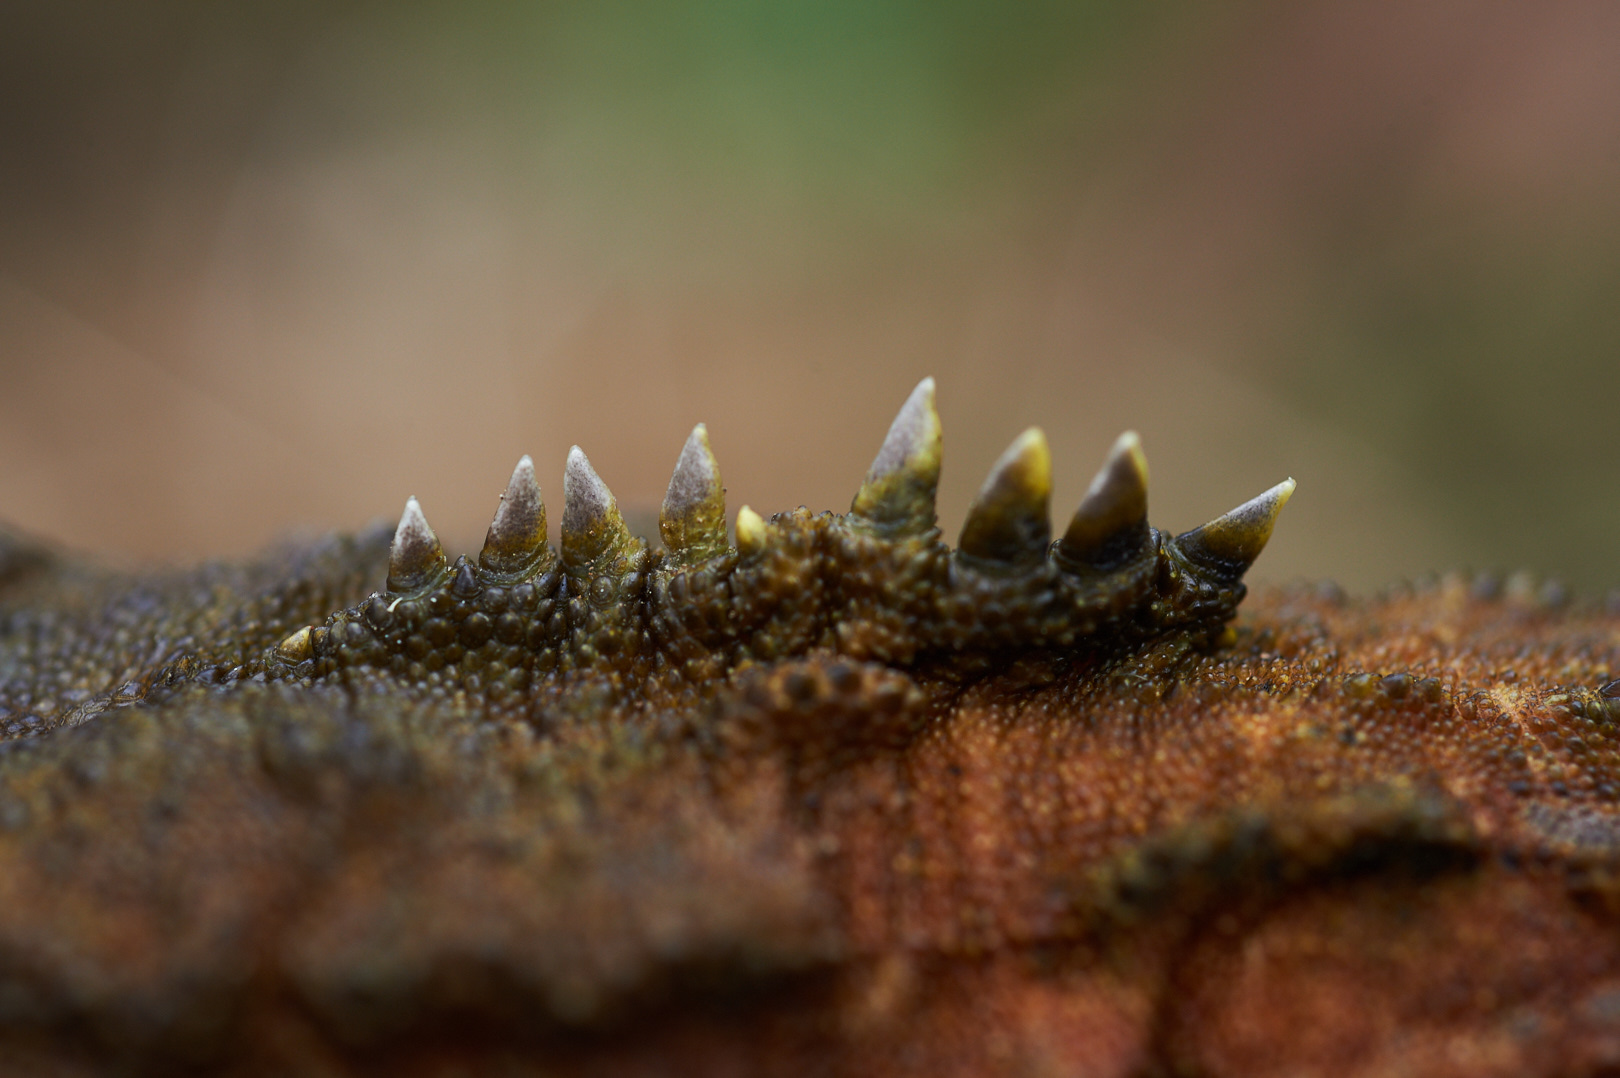 Tuatara spines by Craig McKenzie